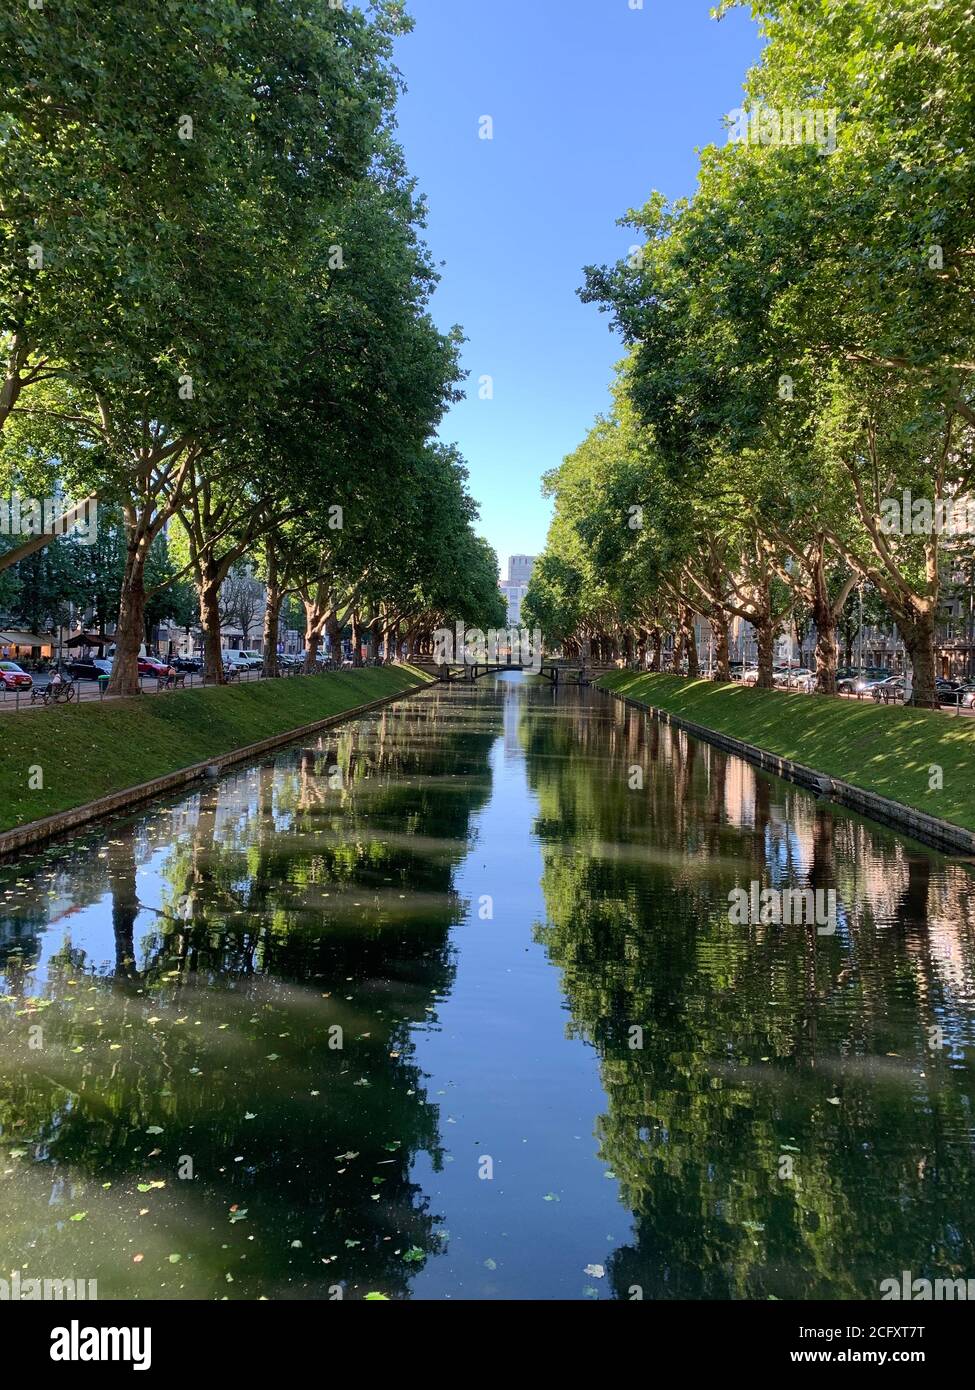 Der Kanal an der Königsallee (King's Avenue).Diese Straße ist berühmt für Luxus-Shopping. Düsseldorf, Deutschland Stockfoto